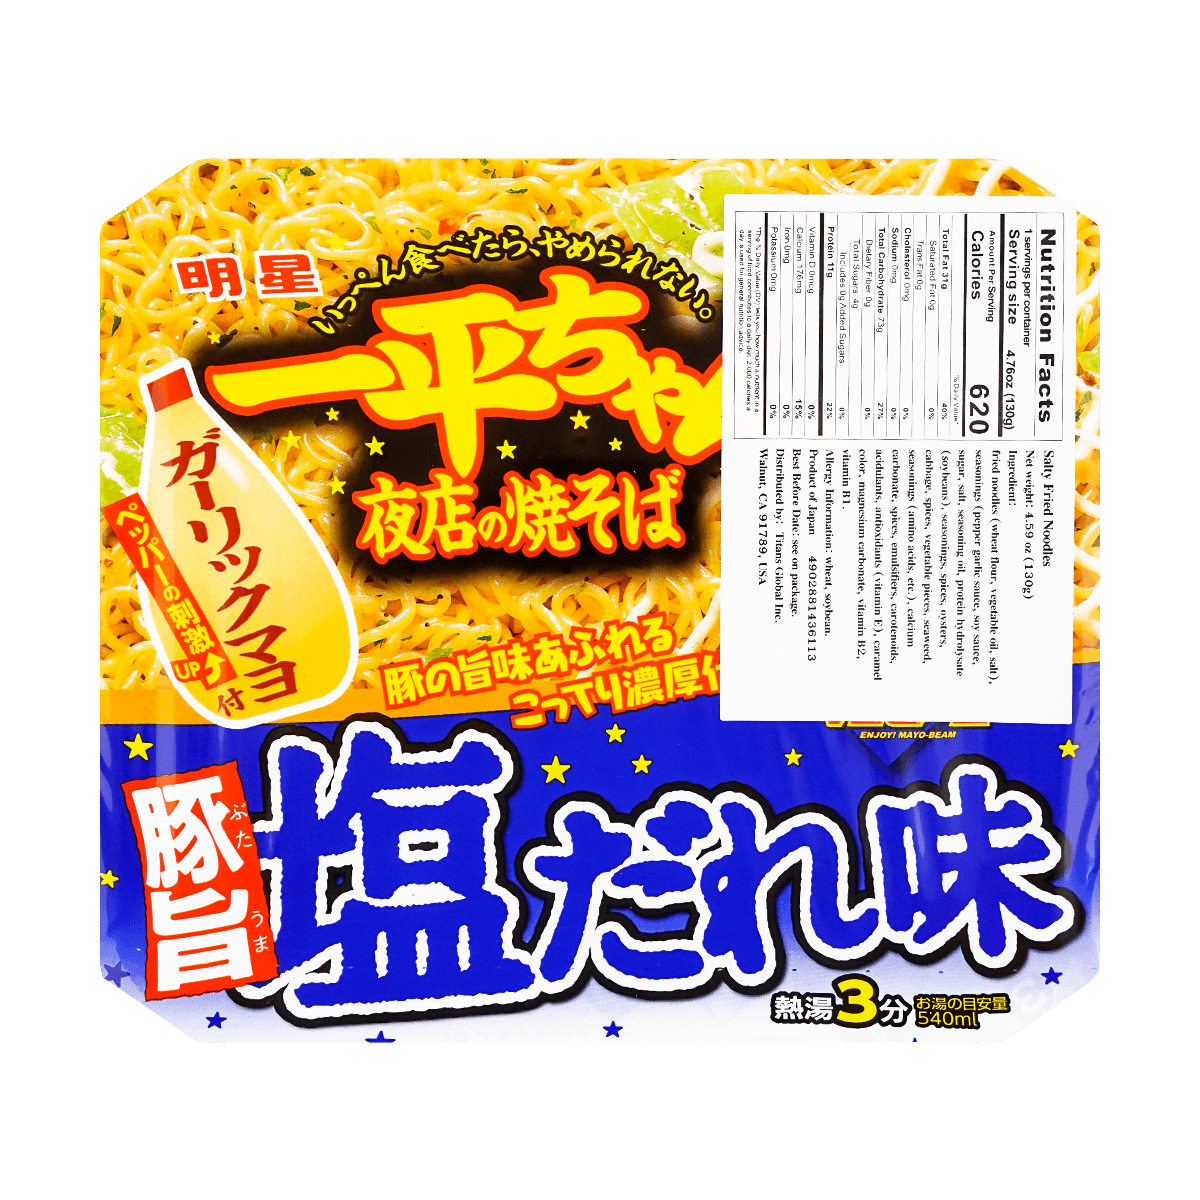 日本MYOJO明星 超级王牌拉面 一平酱 夜店炒面 胡椒盐蛋黄酱味 130g(不同包装随机发) 怎么样 - 亚米网